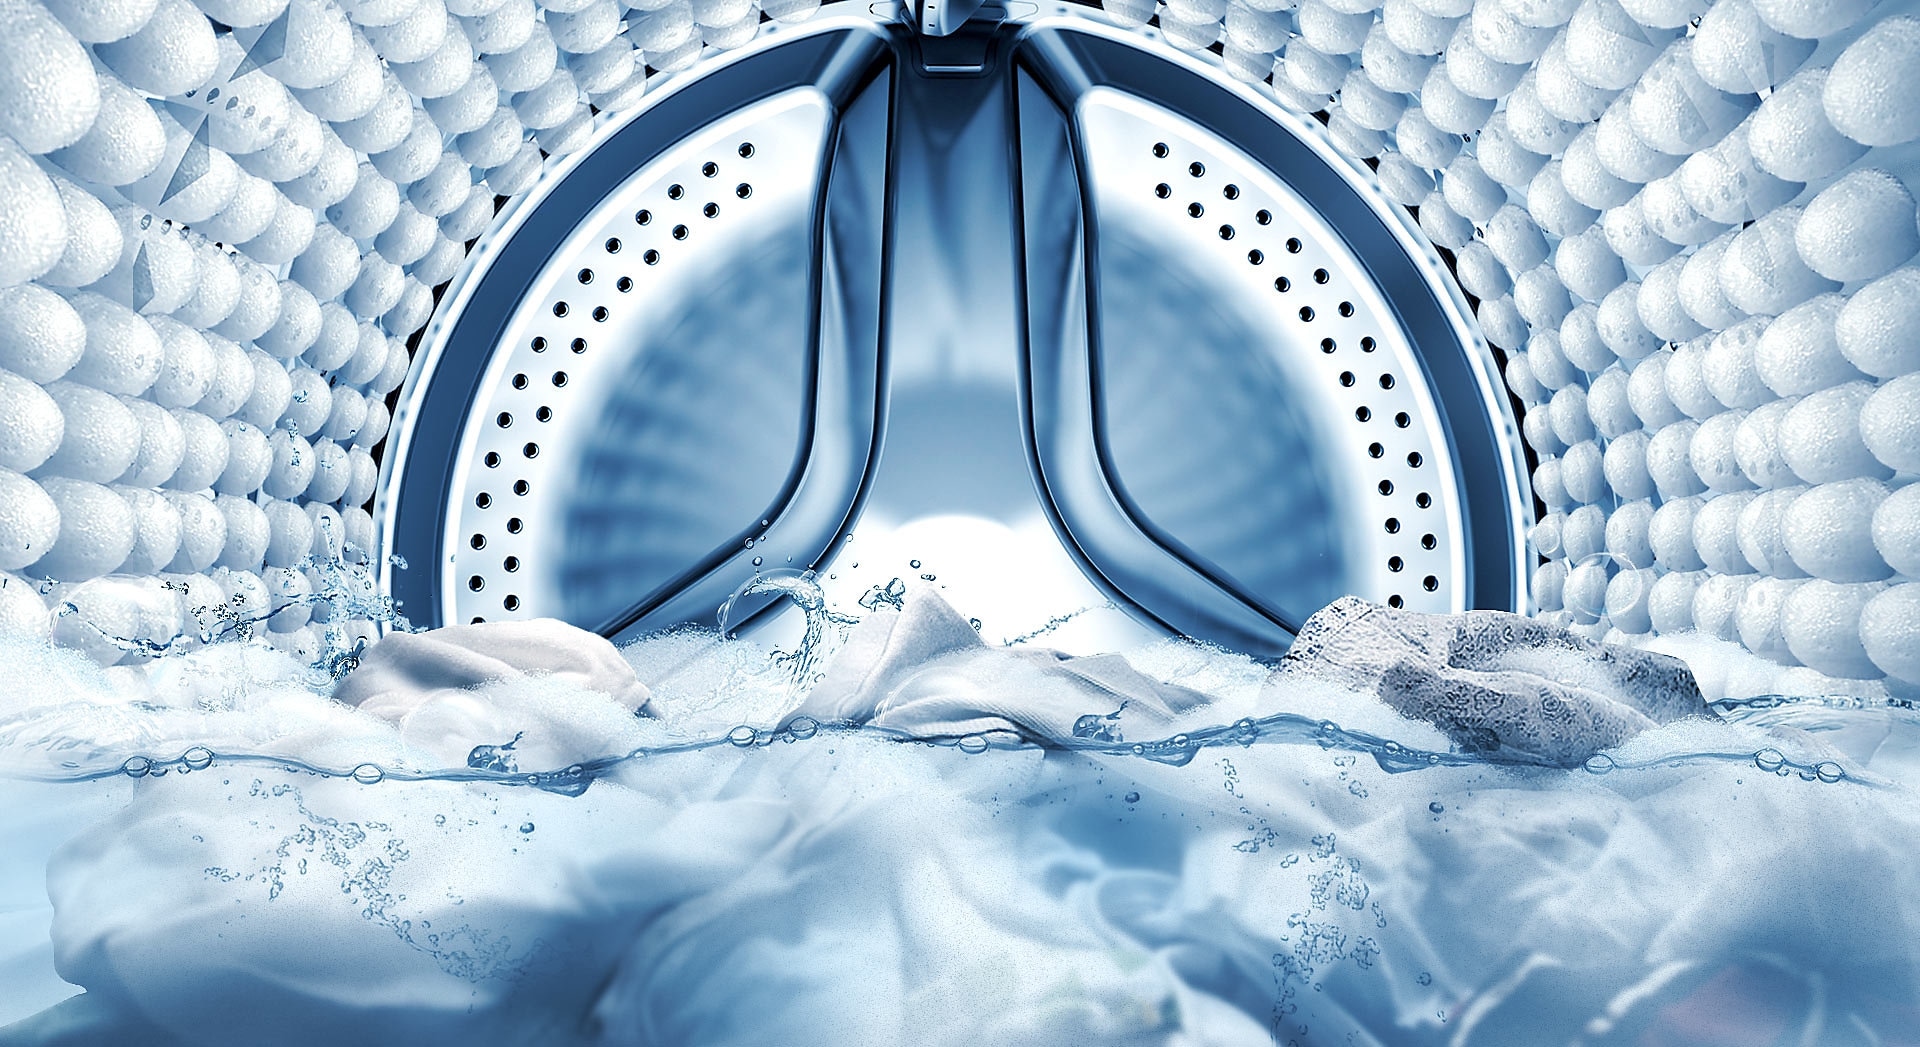 Image illustrant l’intérieur du tambour de la machine pendant que la fonction de trempage à bulles élimine les taches du linge.